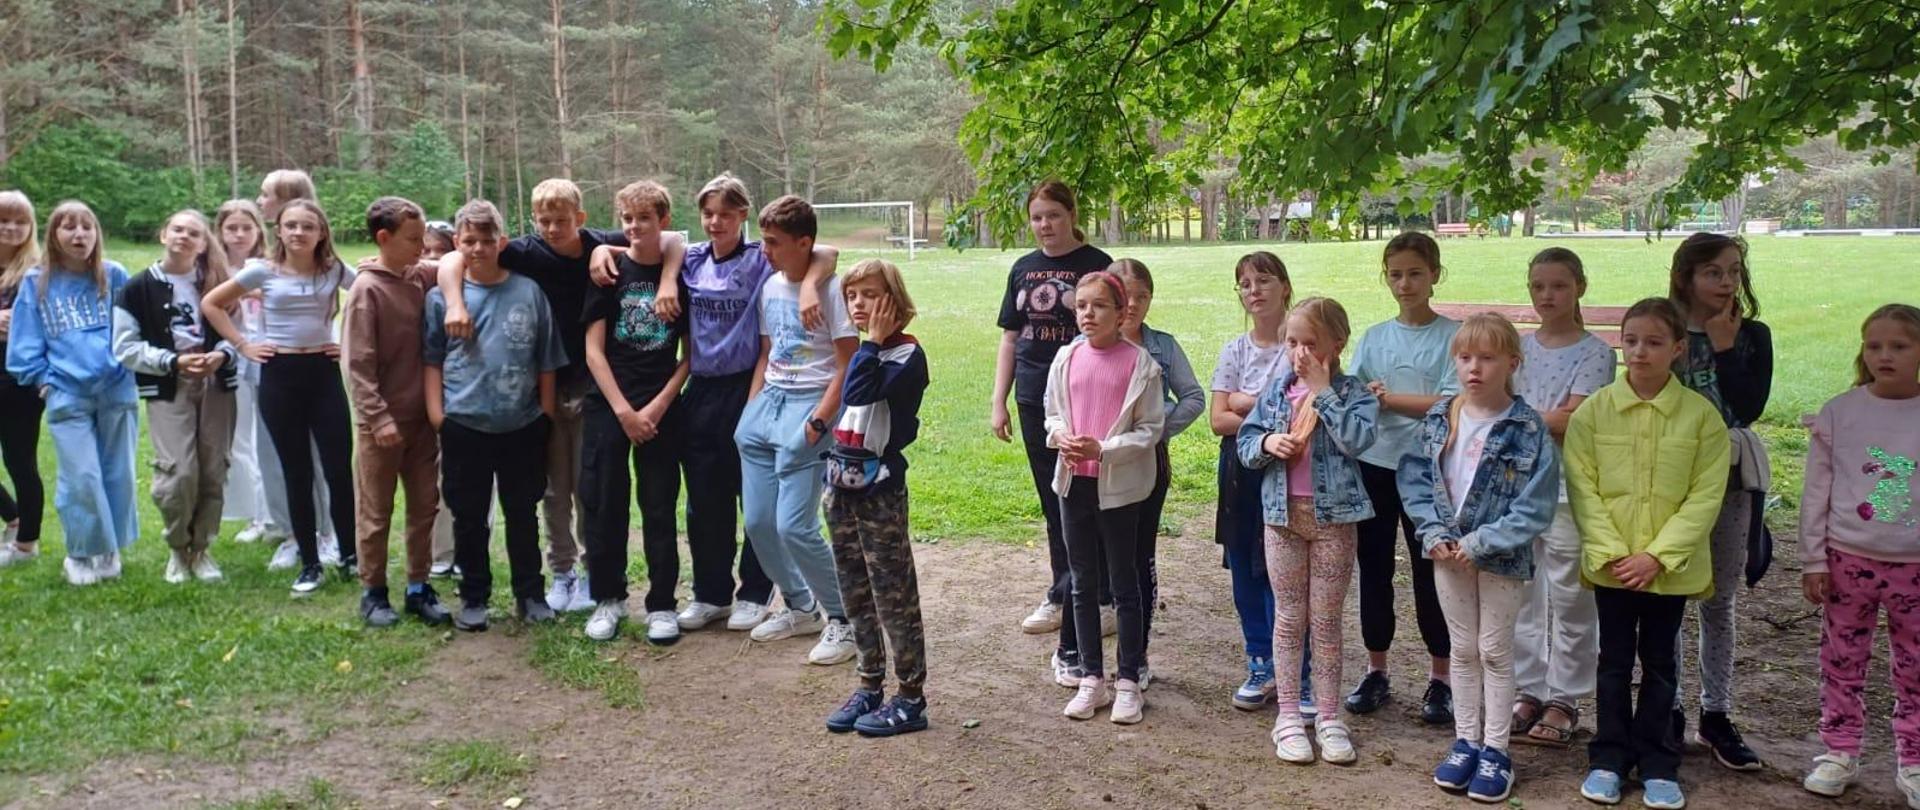 Na zdjęciu duża grupa dzieci. Wszyscy ubrani na sportowo. Zdjęcie wykonane na łonie natury. Dookoła las w oddali bramka do piłki nożnej.